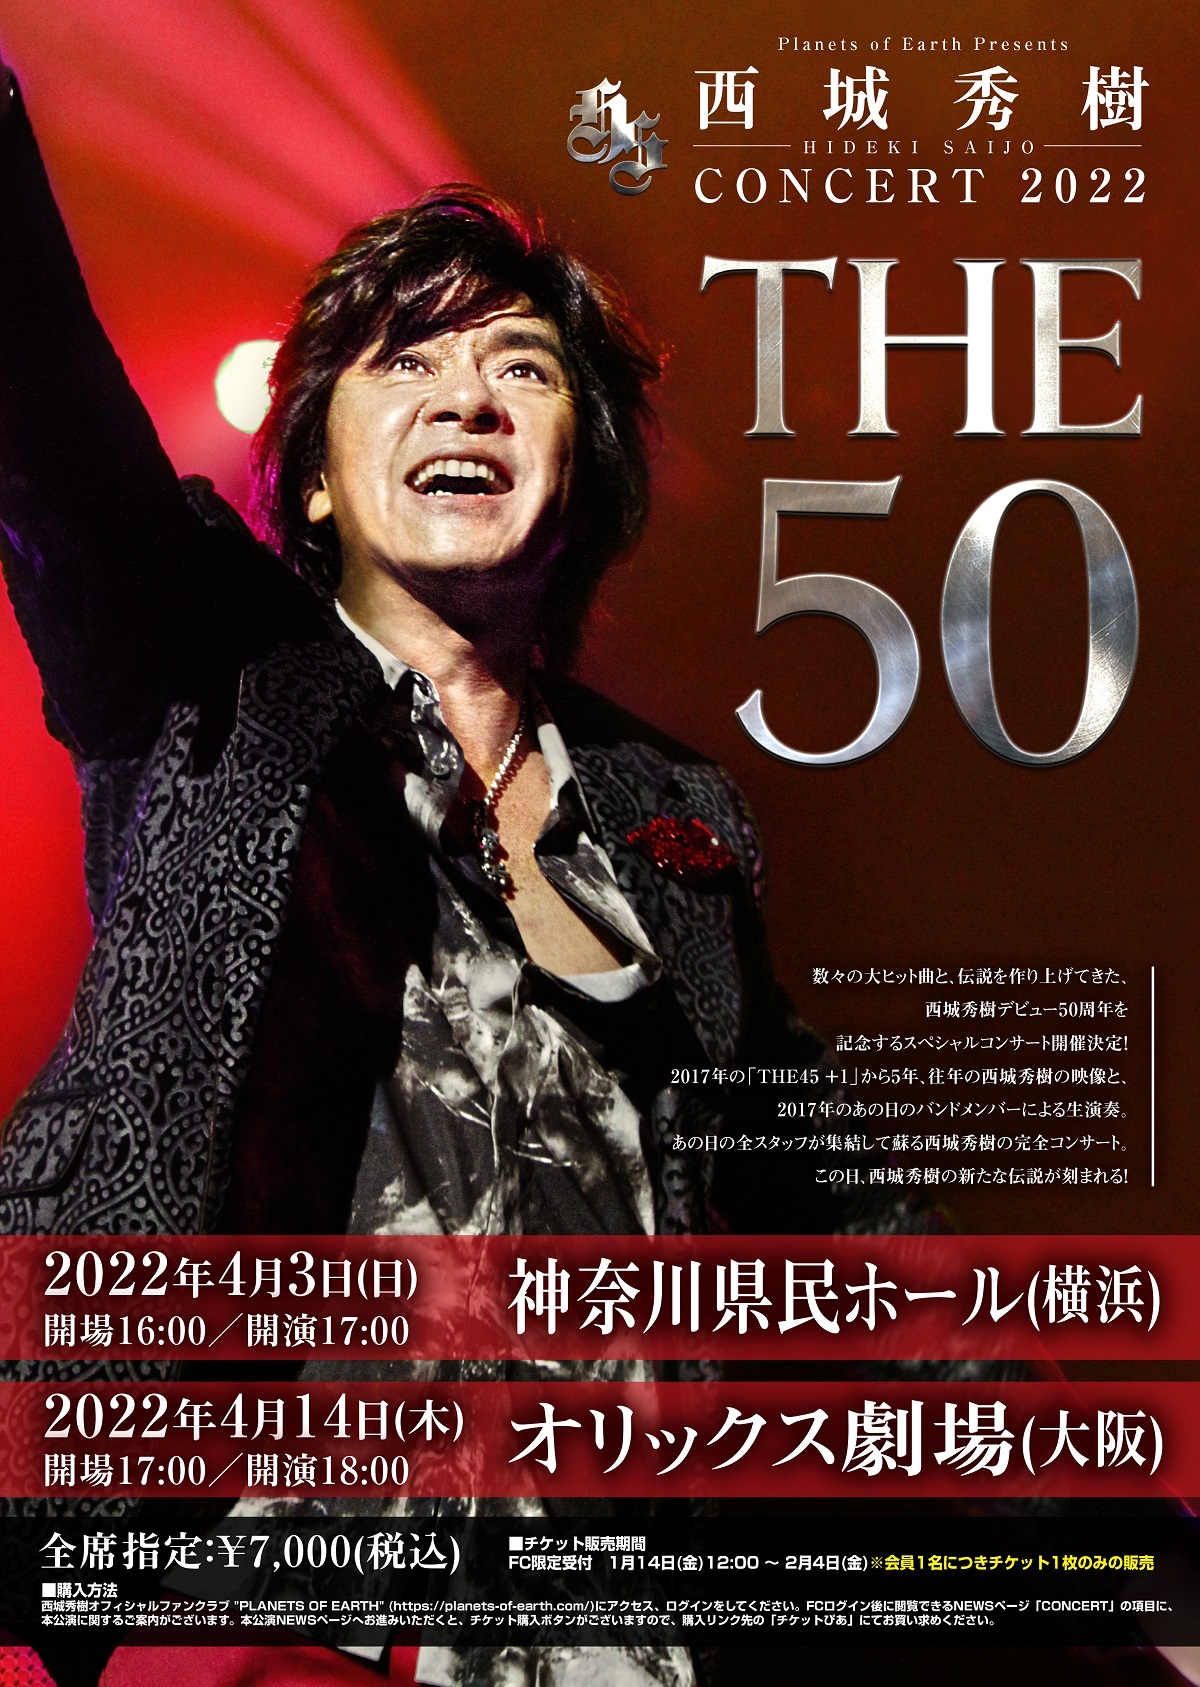 西城秀樹さん、デビュー50周年を記念するスペシャルコンサート開催決定